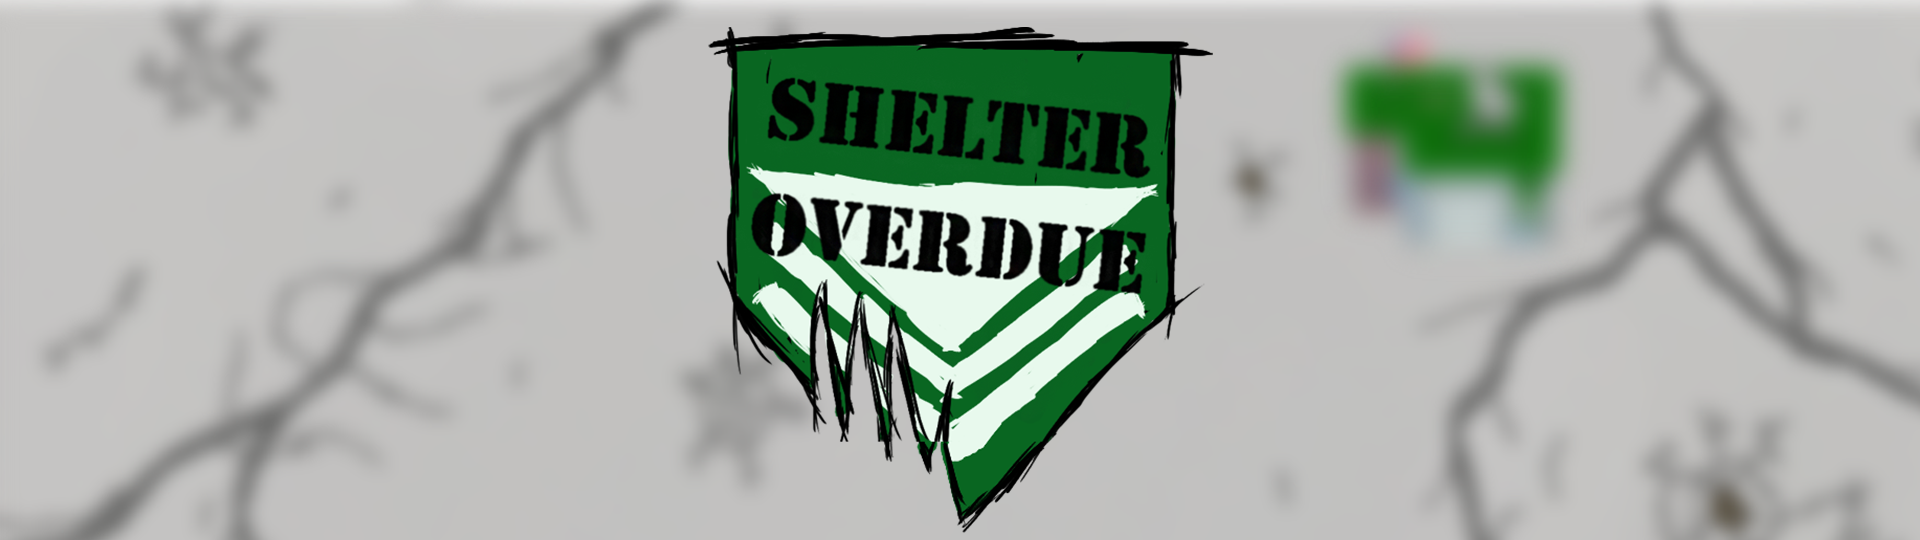 Shelter Overdue